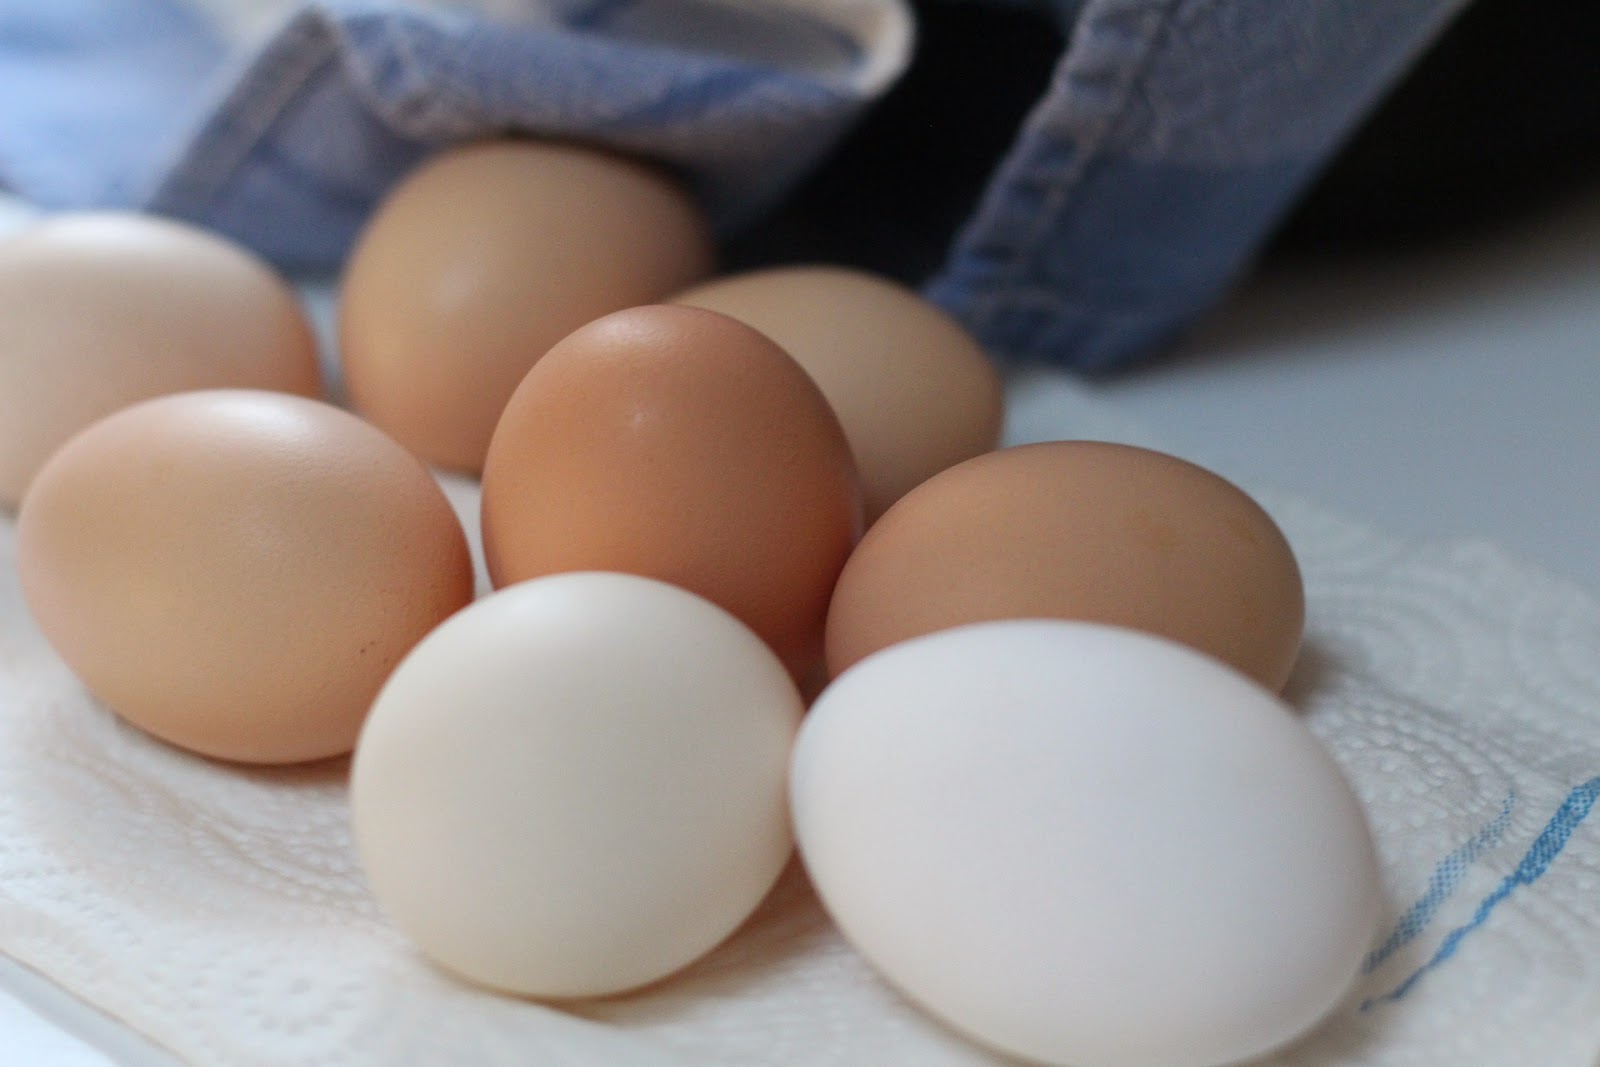 Πώς ξεφλουδίζουμε τα βραστά αυγά πολύ εύκολα χωρίς να καούμε;